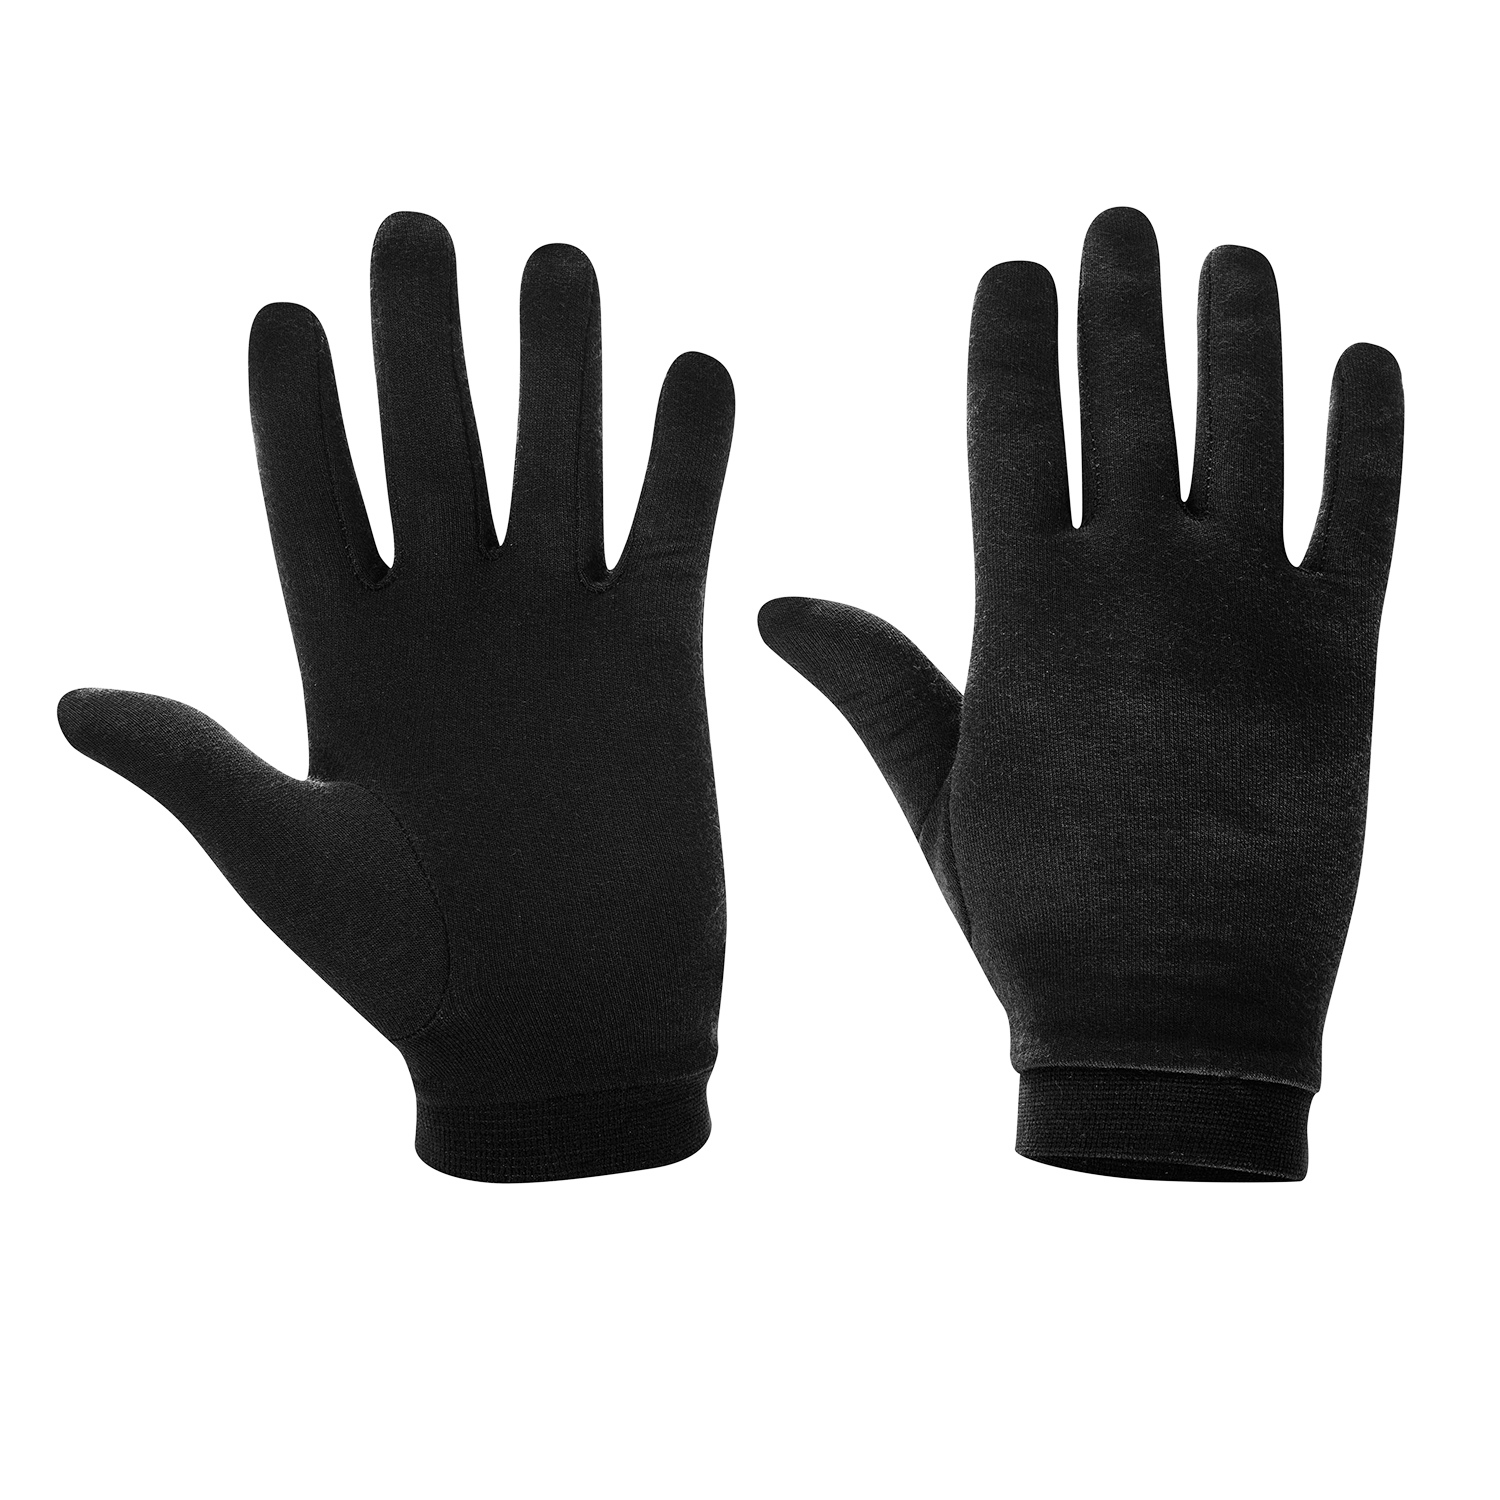 Productfoto van Löffler Merino Wool Handschoenen - zwart 990